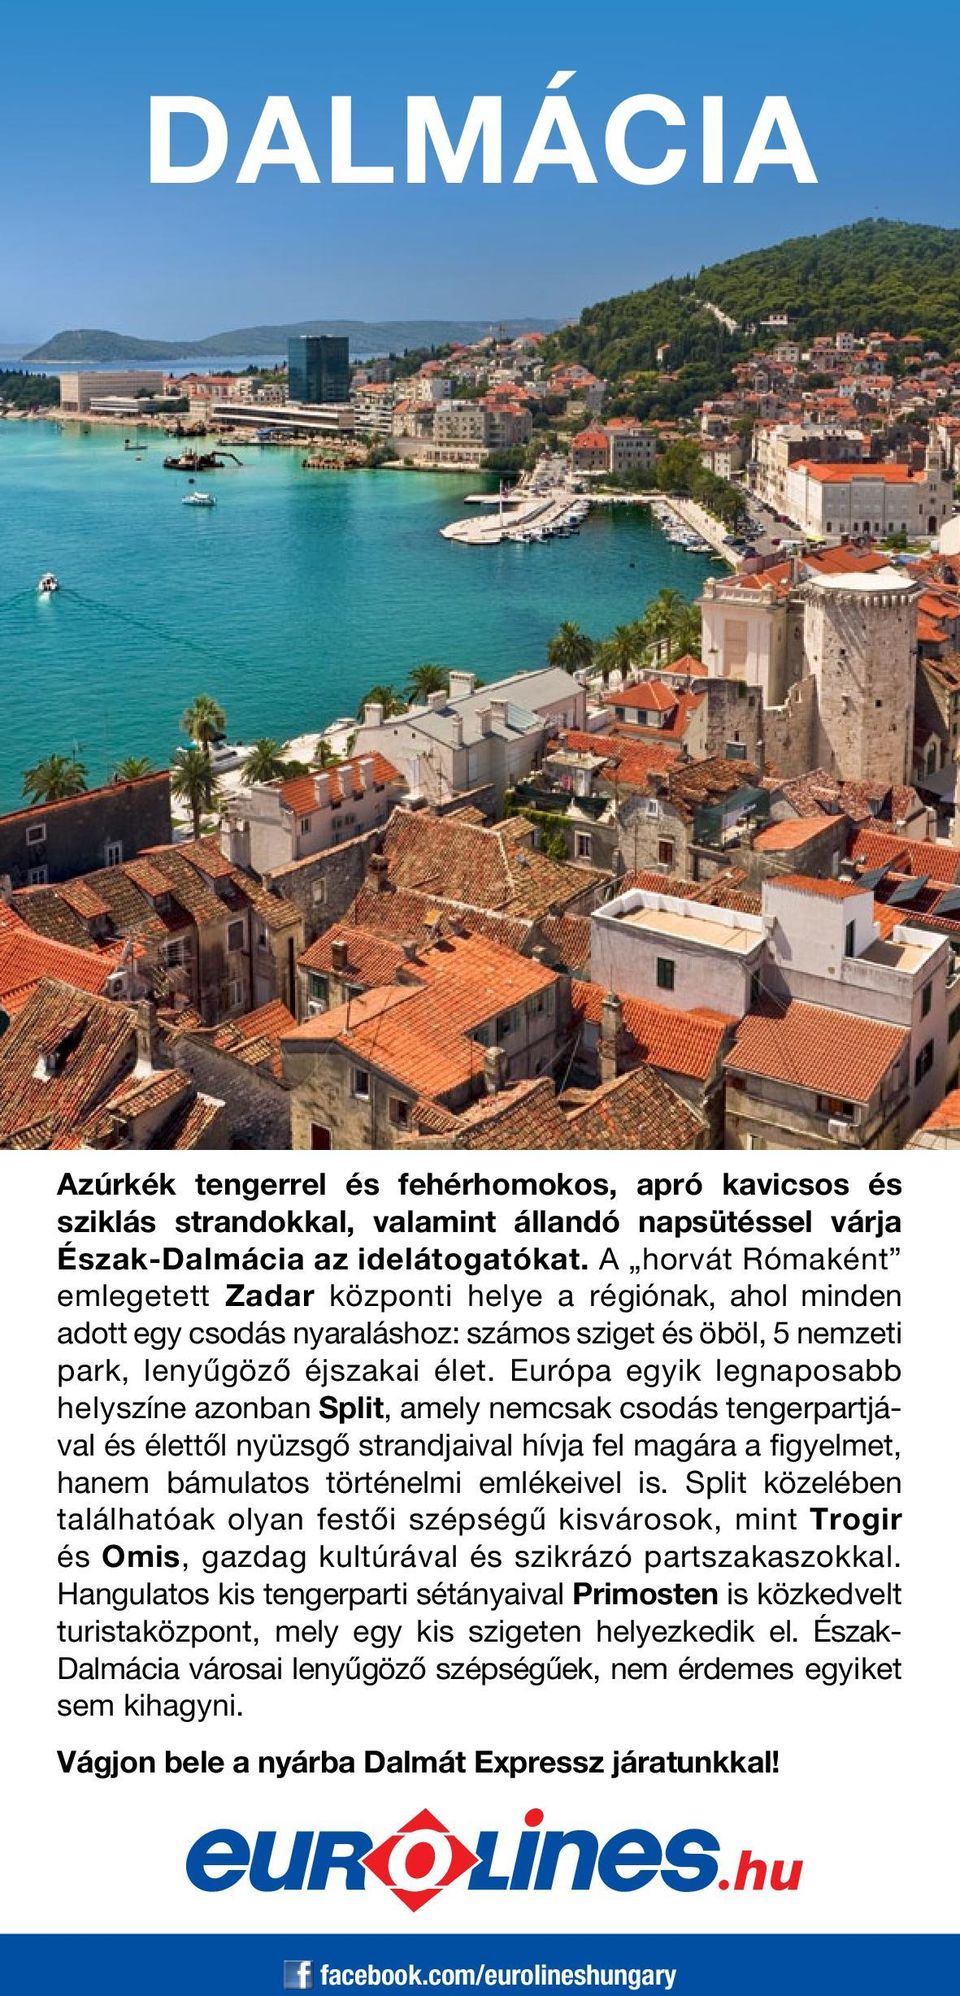 Európa egyik legnaposabb helyszíne azonban Split, amely nemcsak csodás tengerpartjával és élettől nyüzsgő strandjaival hívja fel magára a figyelmet, hanem bámulatos történelmi emlékeivel is.